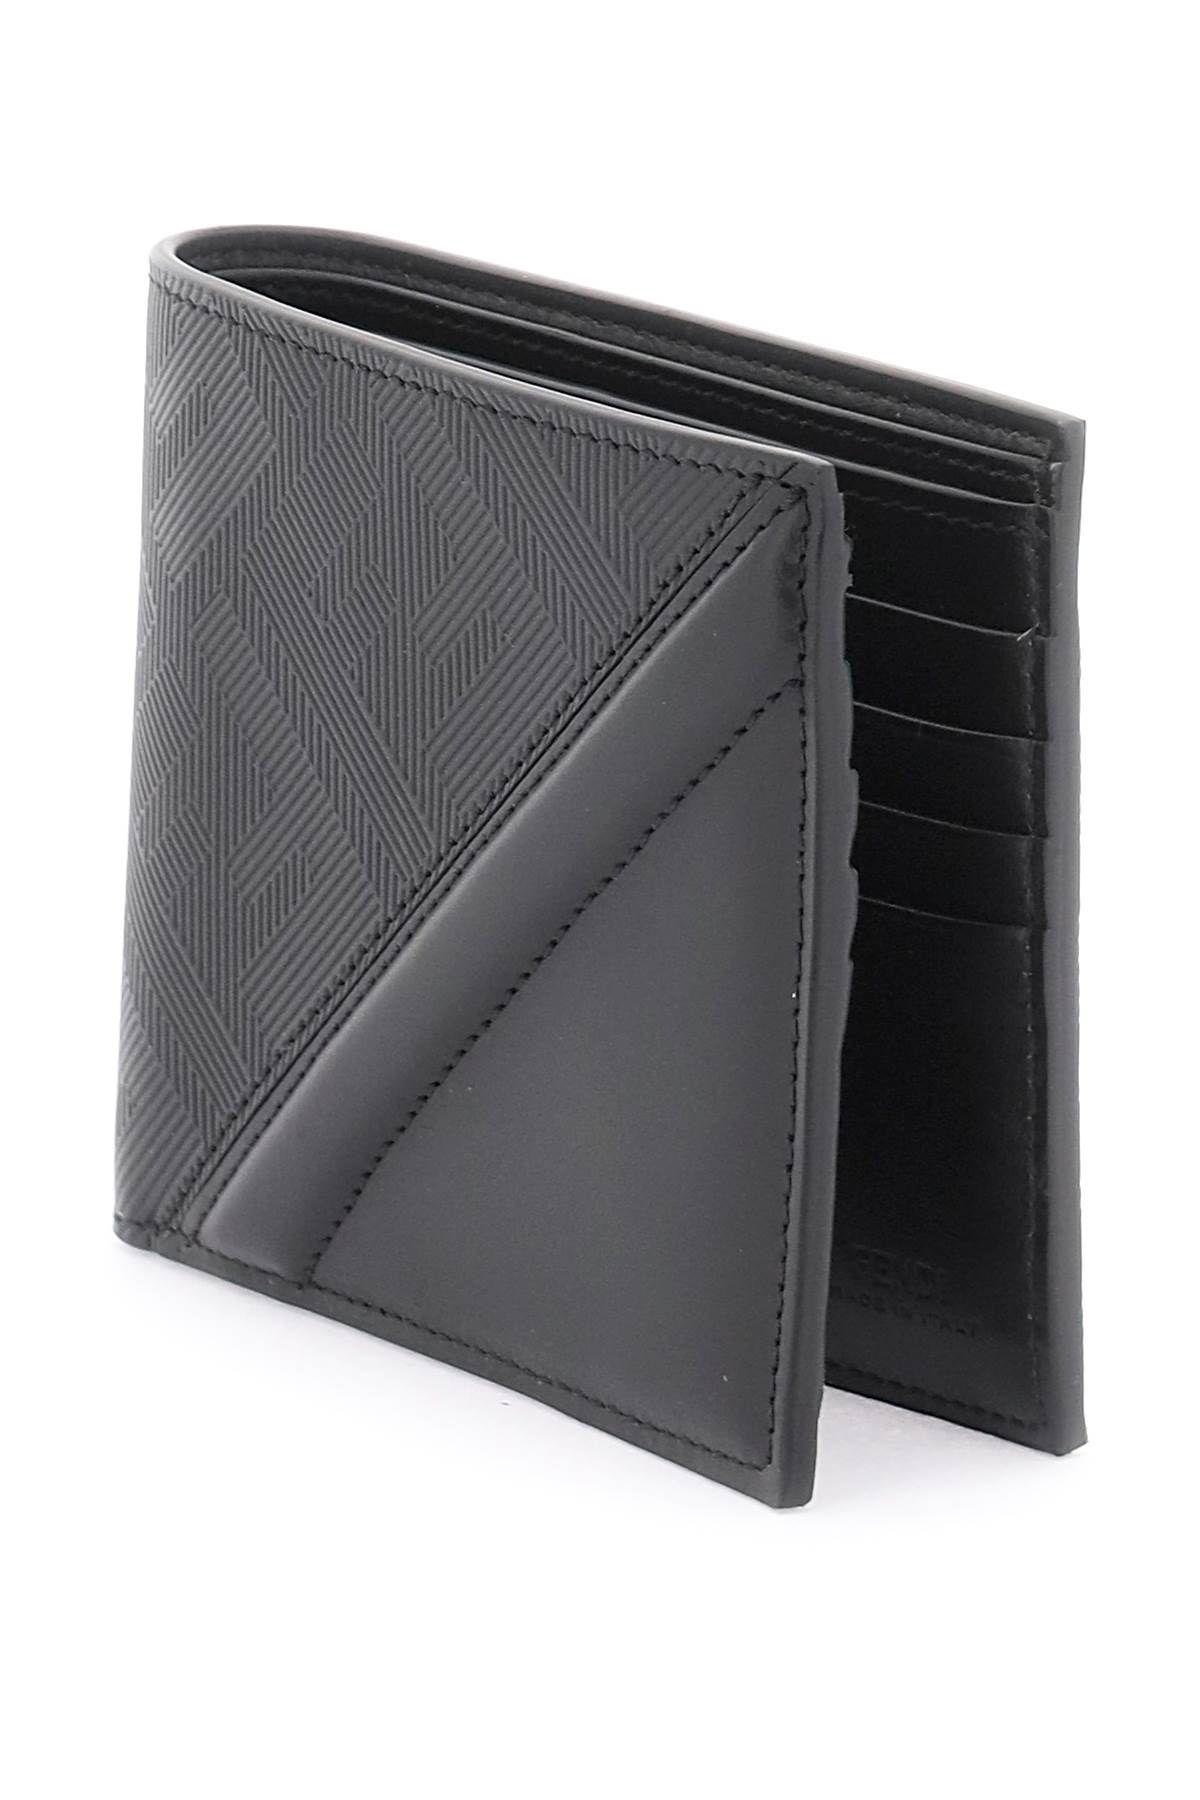 Fendi Diagonal Wallet